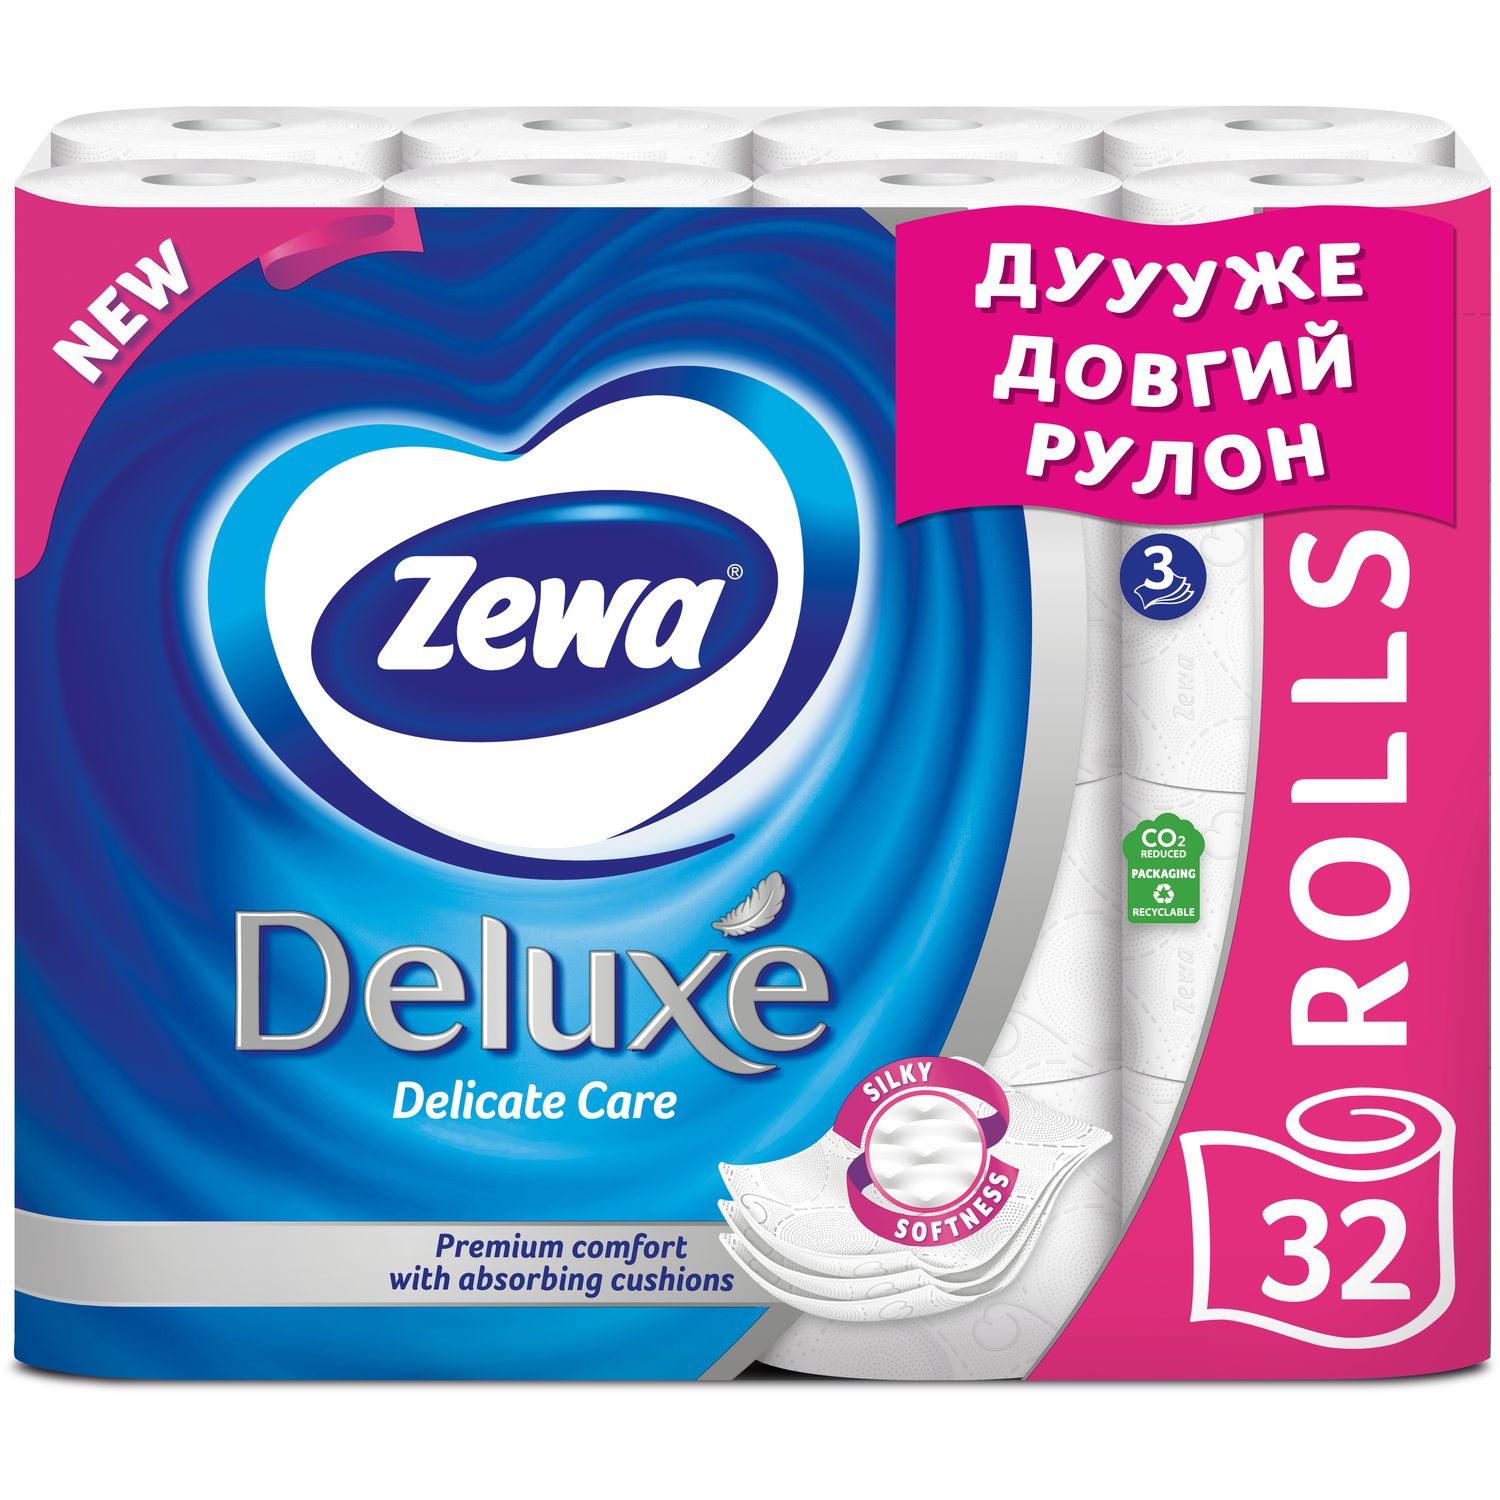 Туалетная бумага Zewa Deluxe, трехслойная, 32 рулона - фото 1